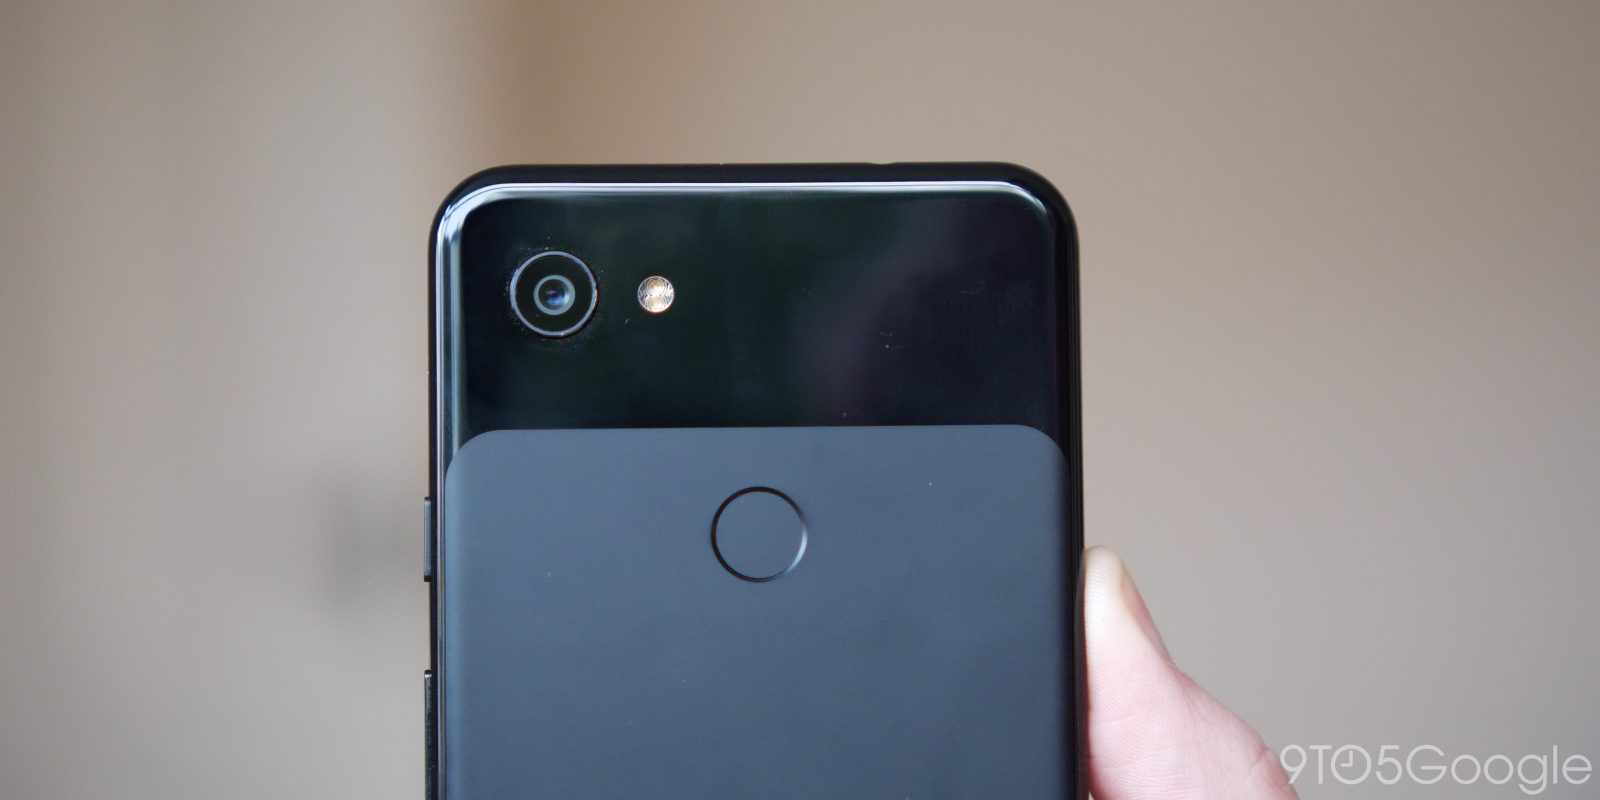 Google Pixel 3a camera